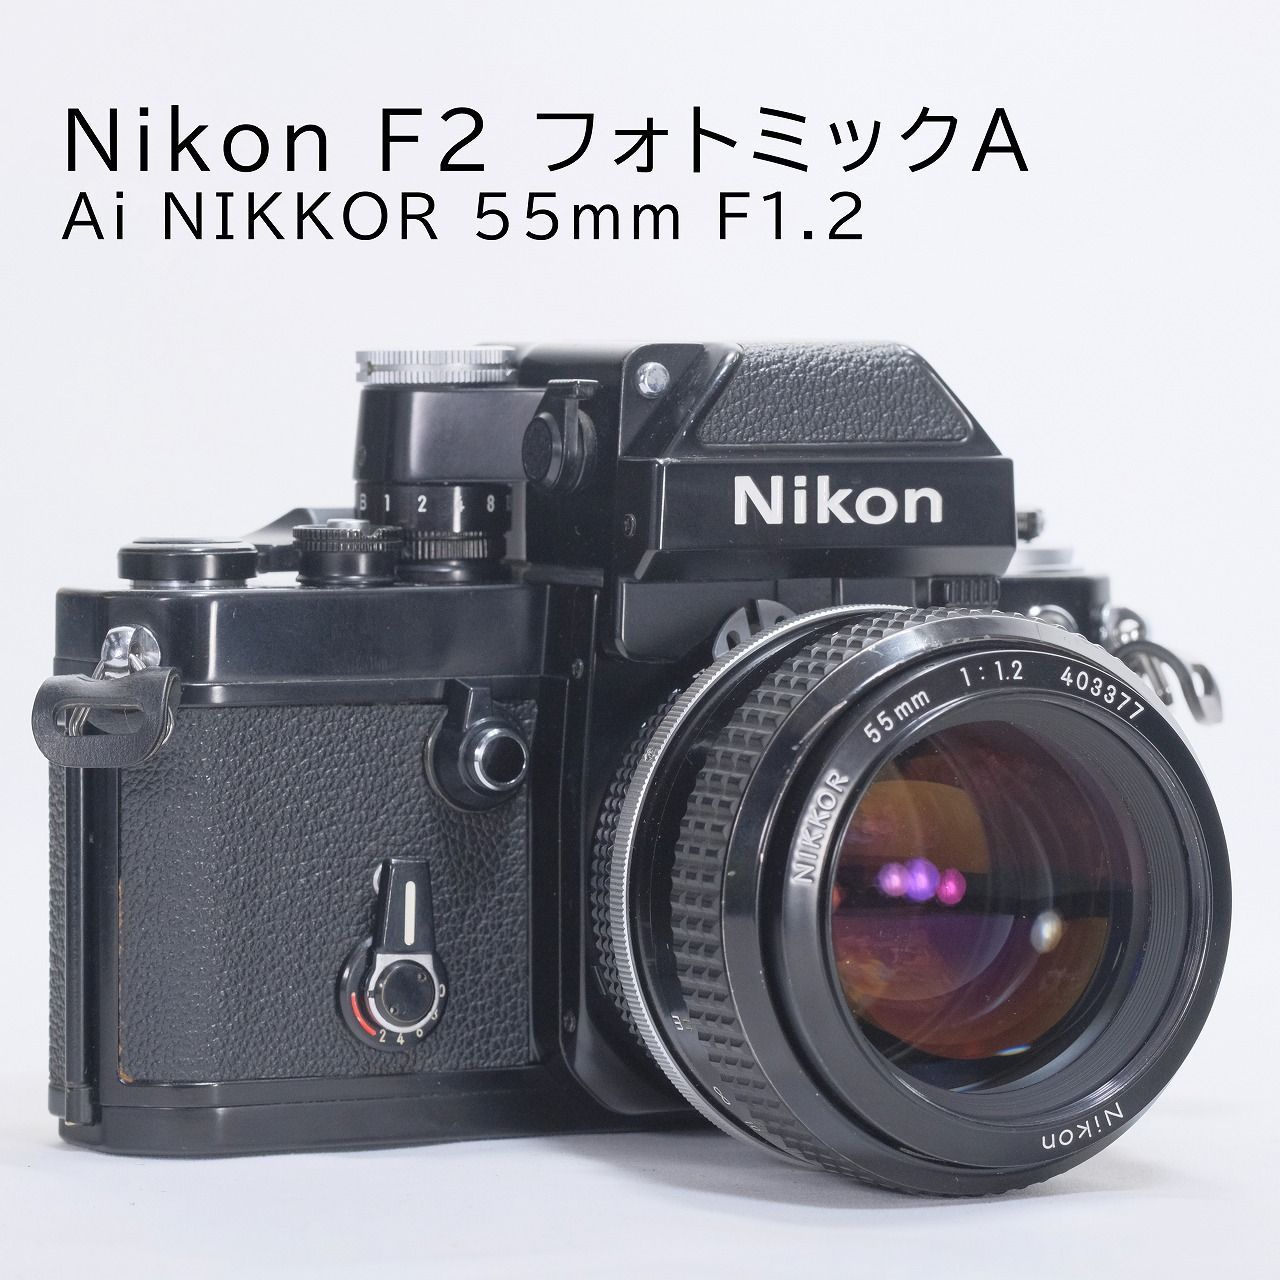 Nikon F2 フィルムカメラ - デジタルカメラ